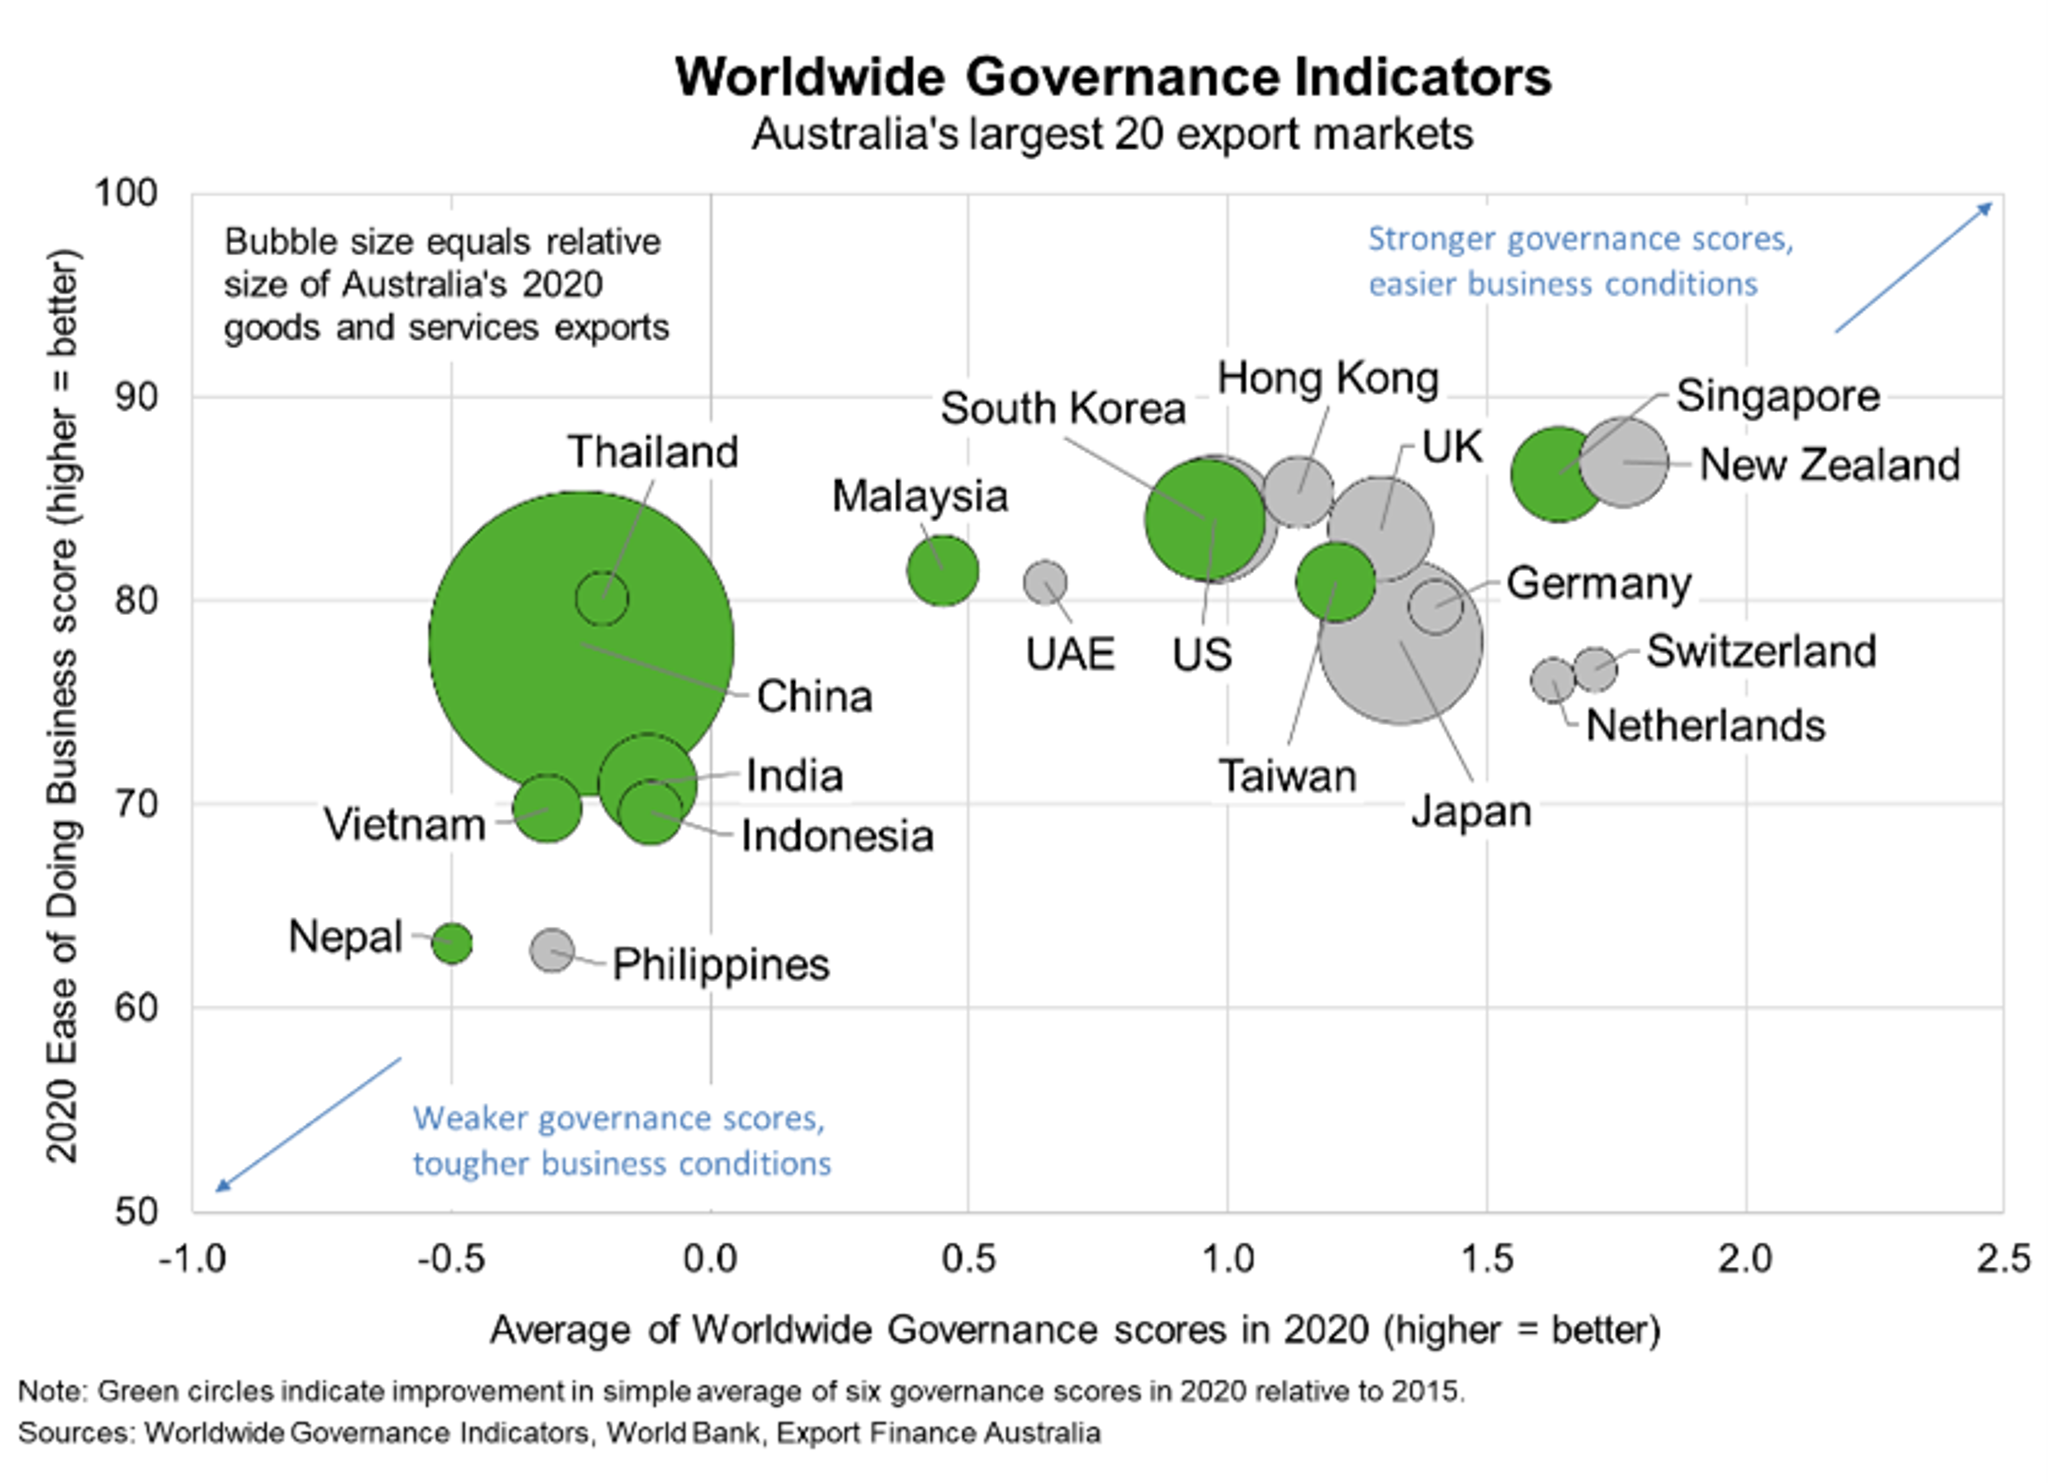 Worldwide Governance Indicators